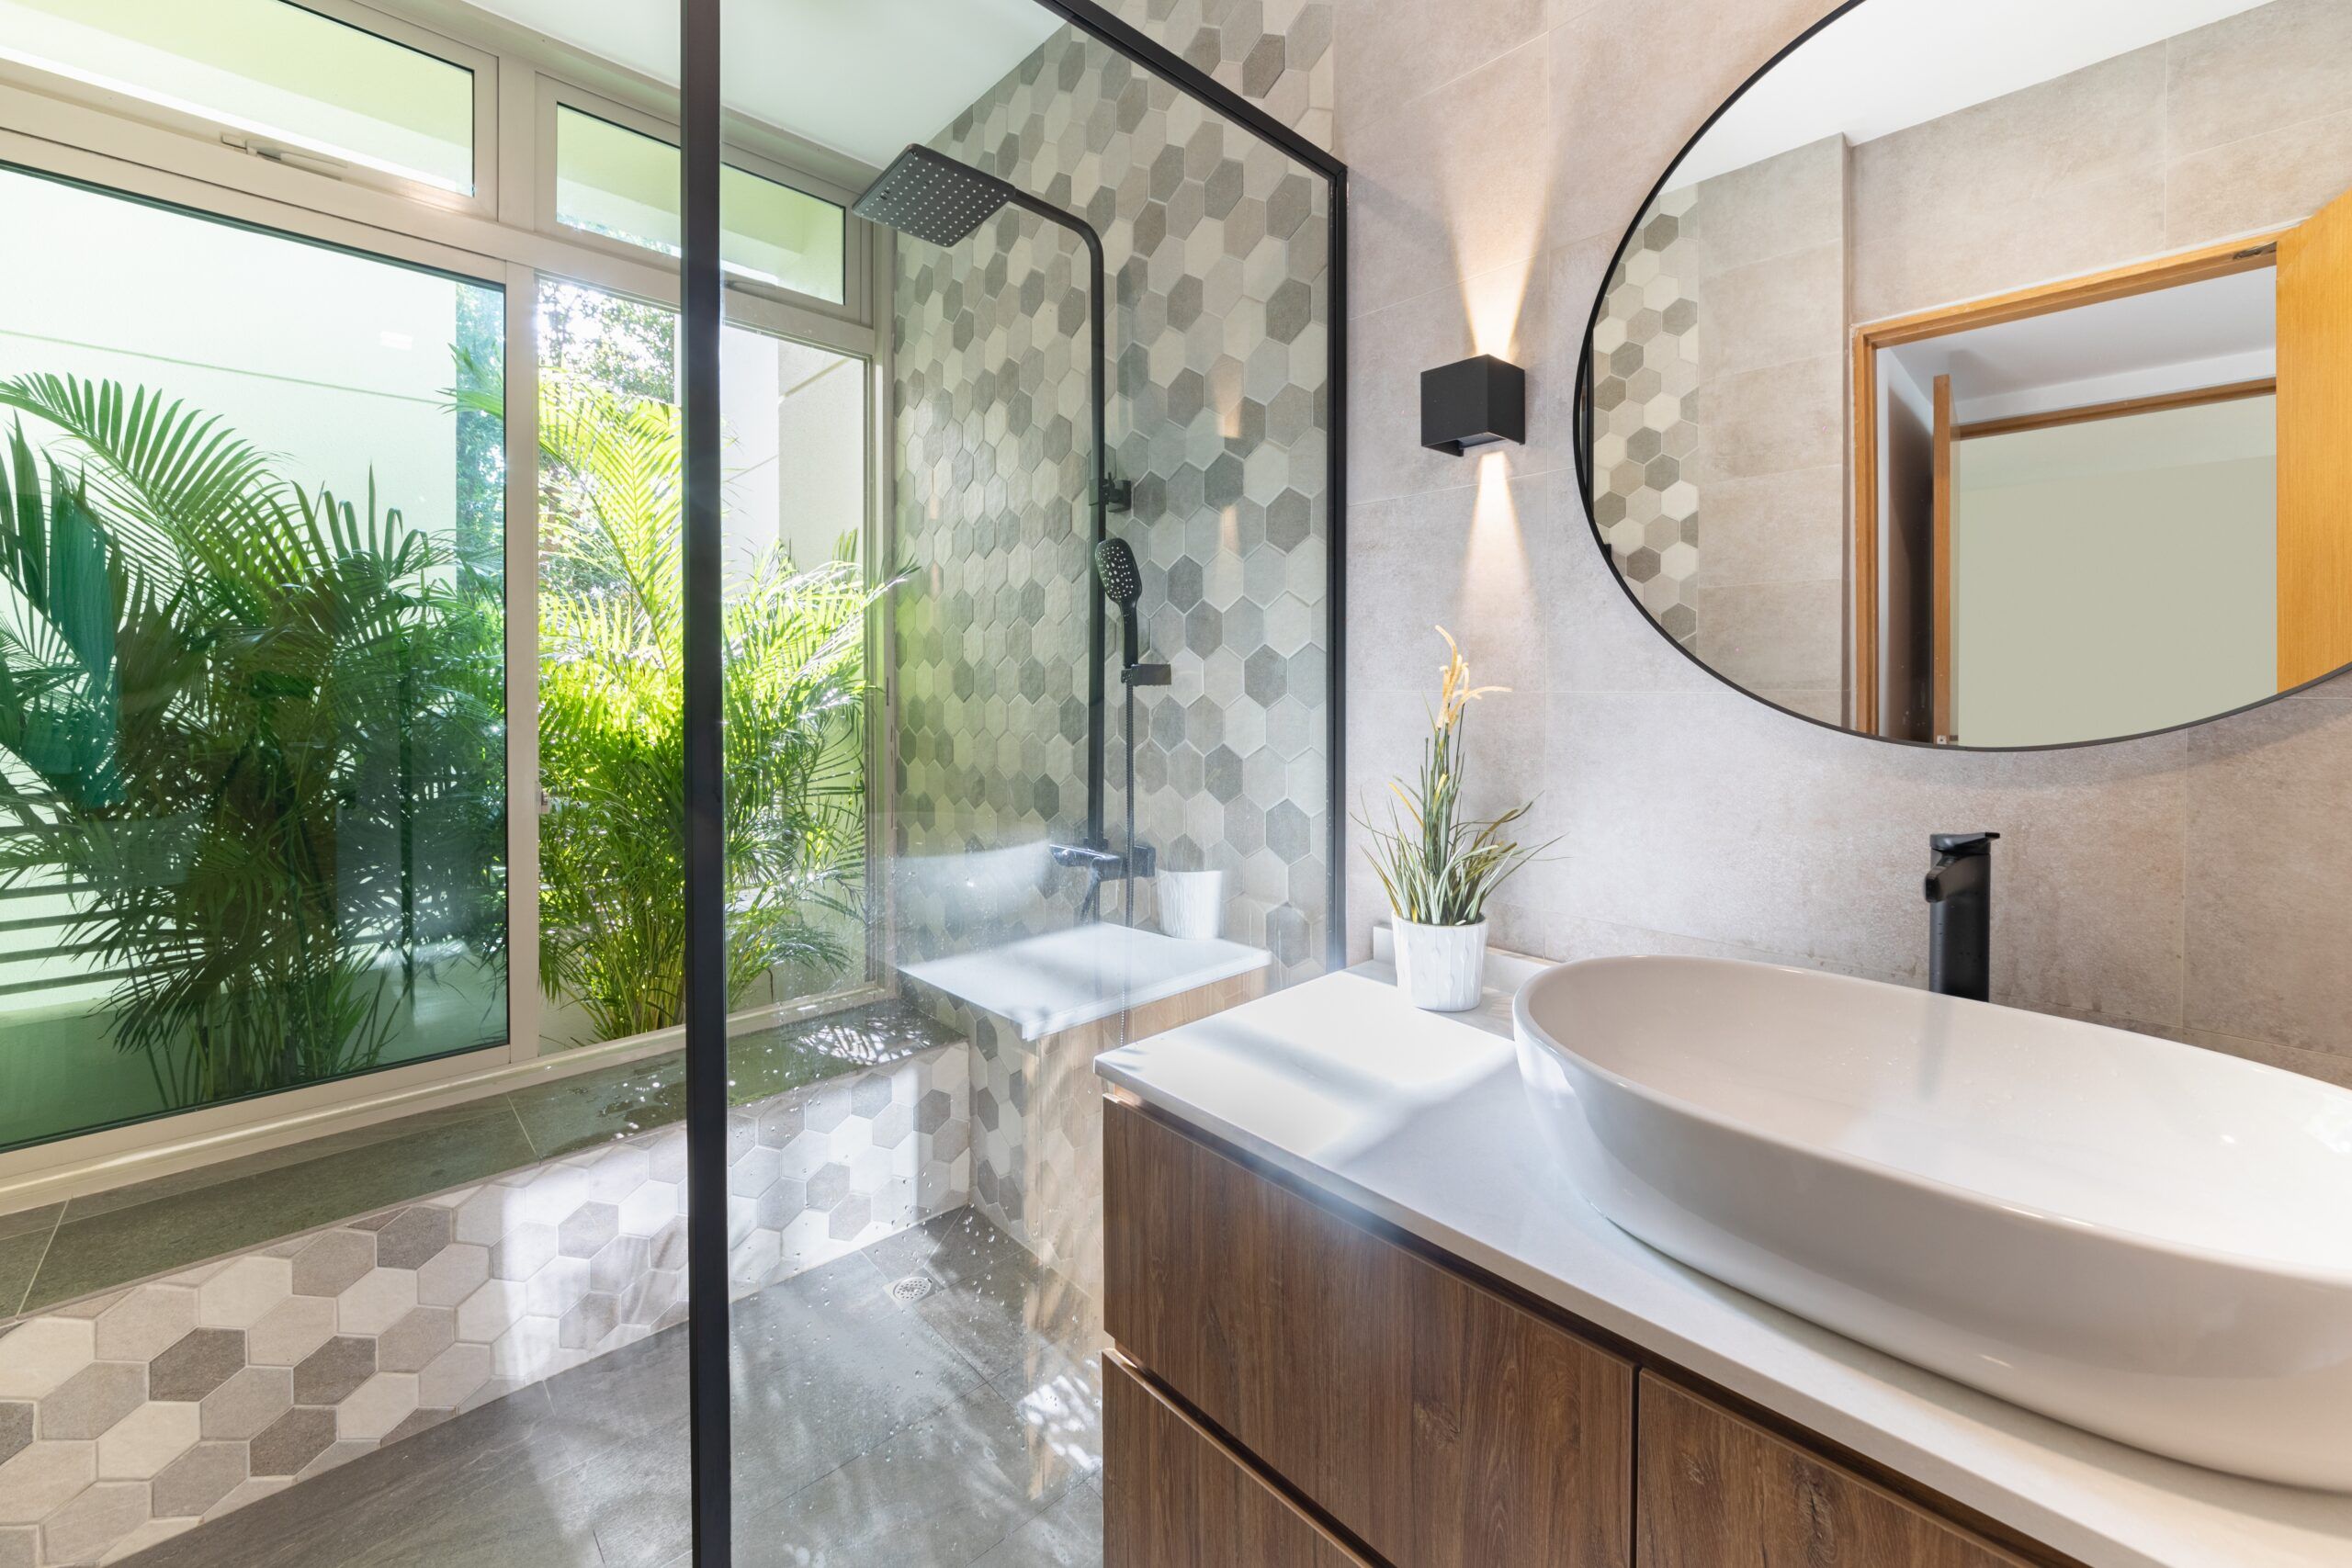 condo-interiors-master-bathroom-shower-glass-partition